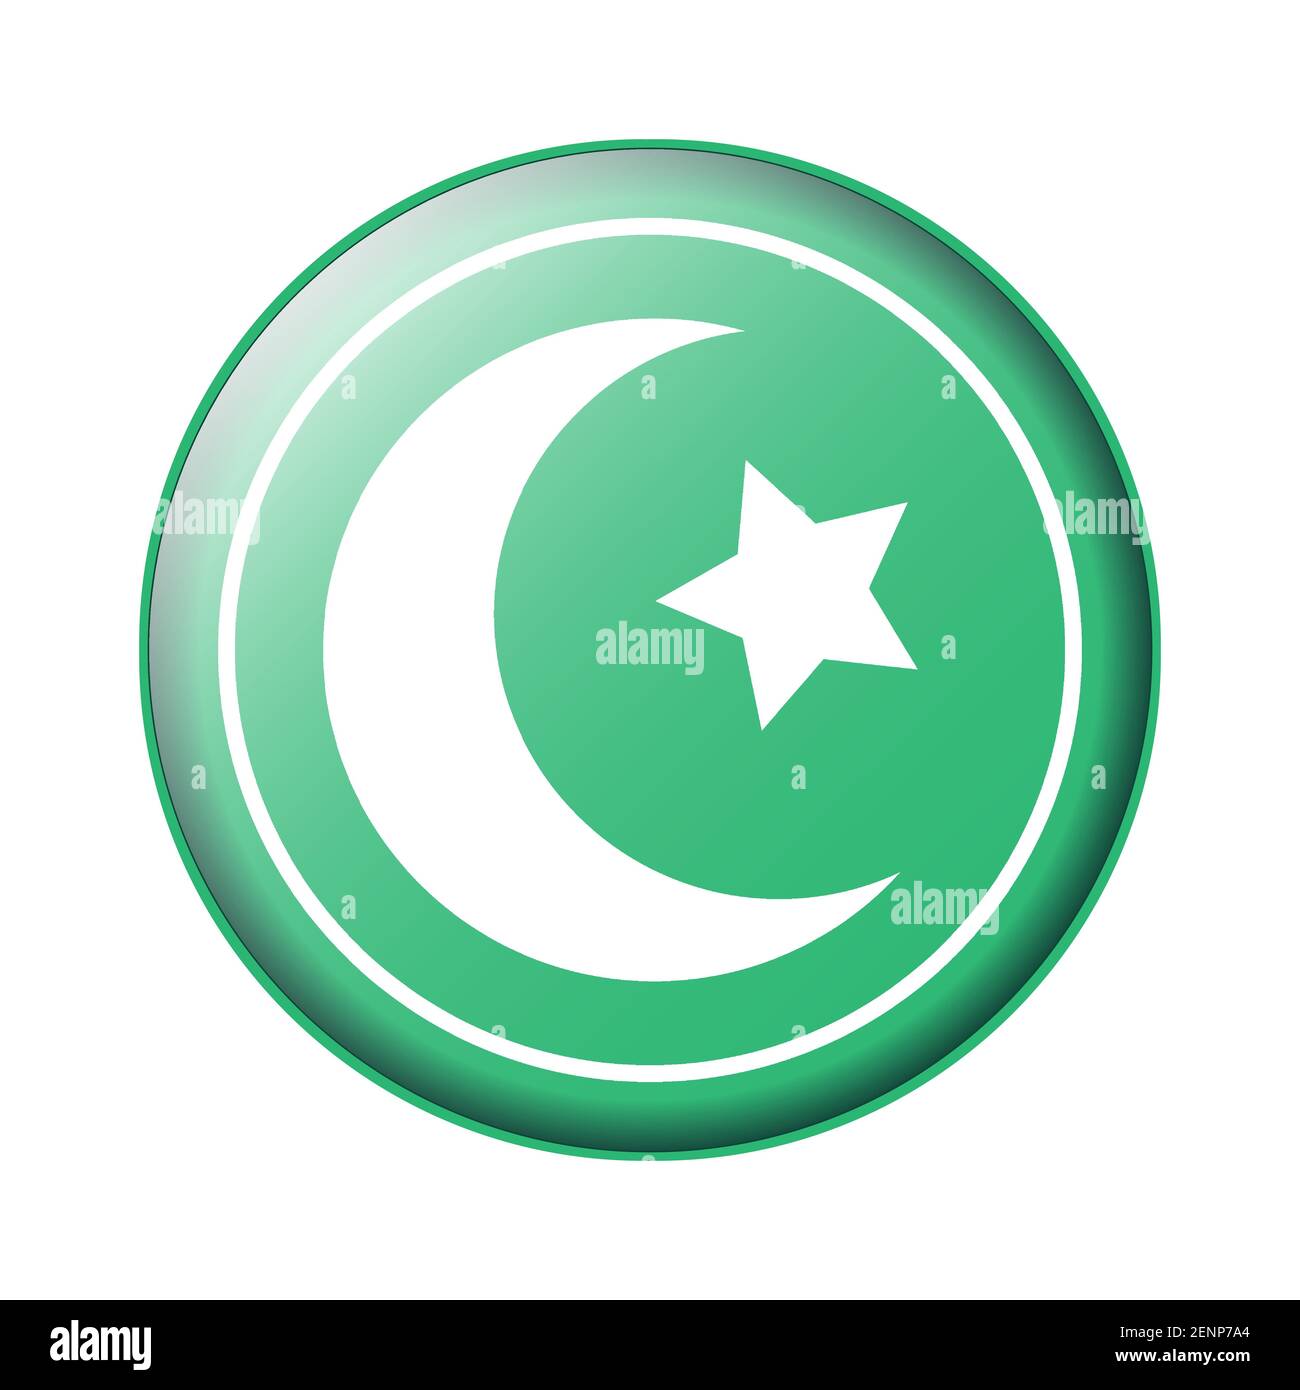 Symbol des Islam ein Halbmond und Stern auf einem Runde Hintergrund flache Farbe für Apps und Websites Stock Vektor